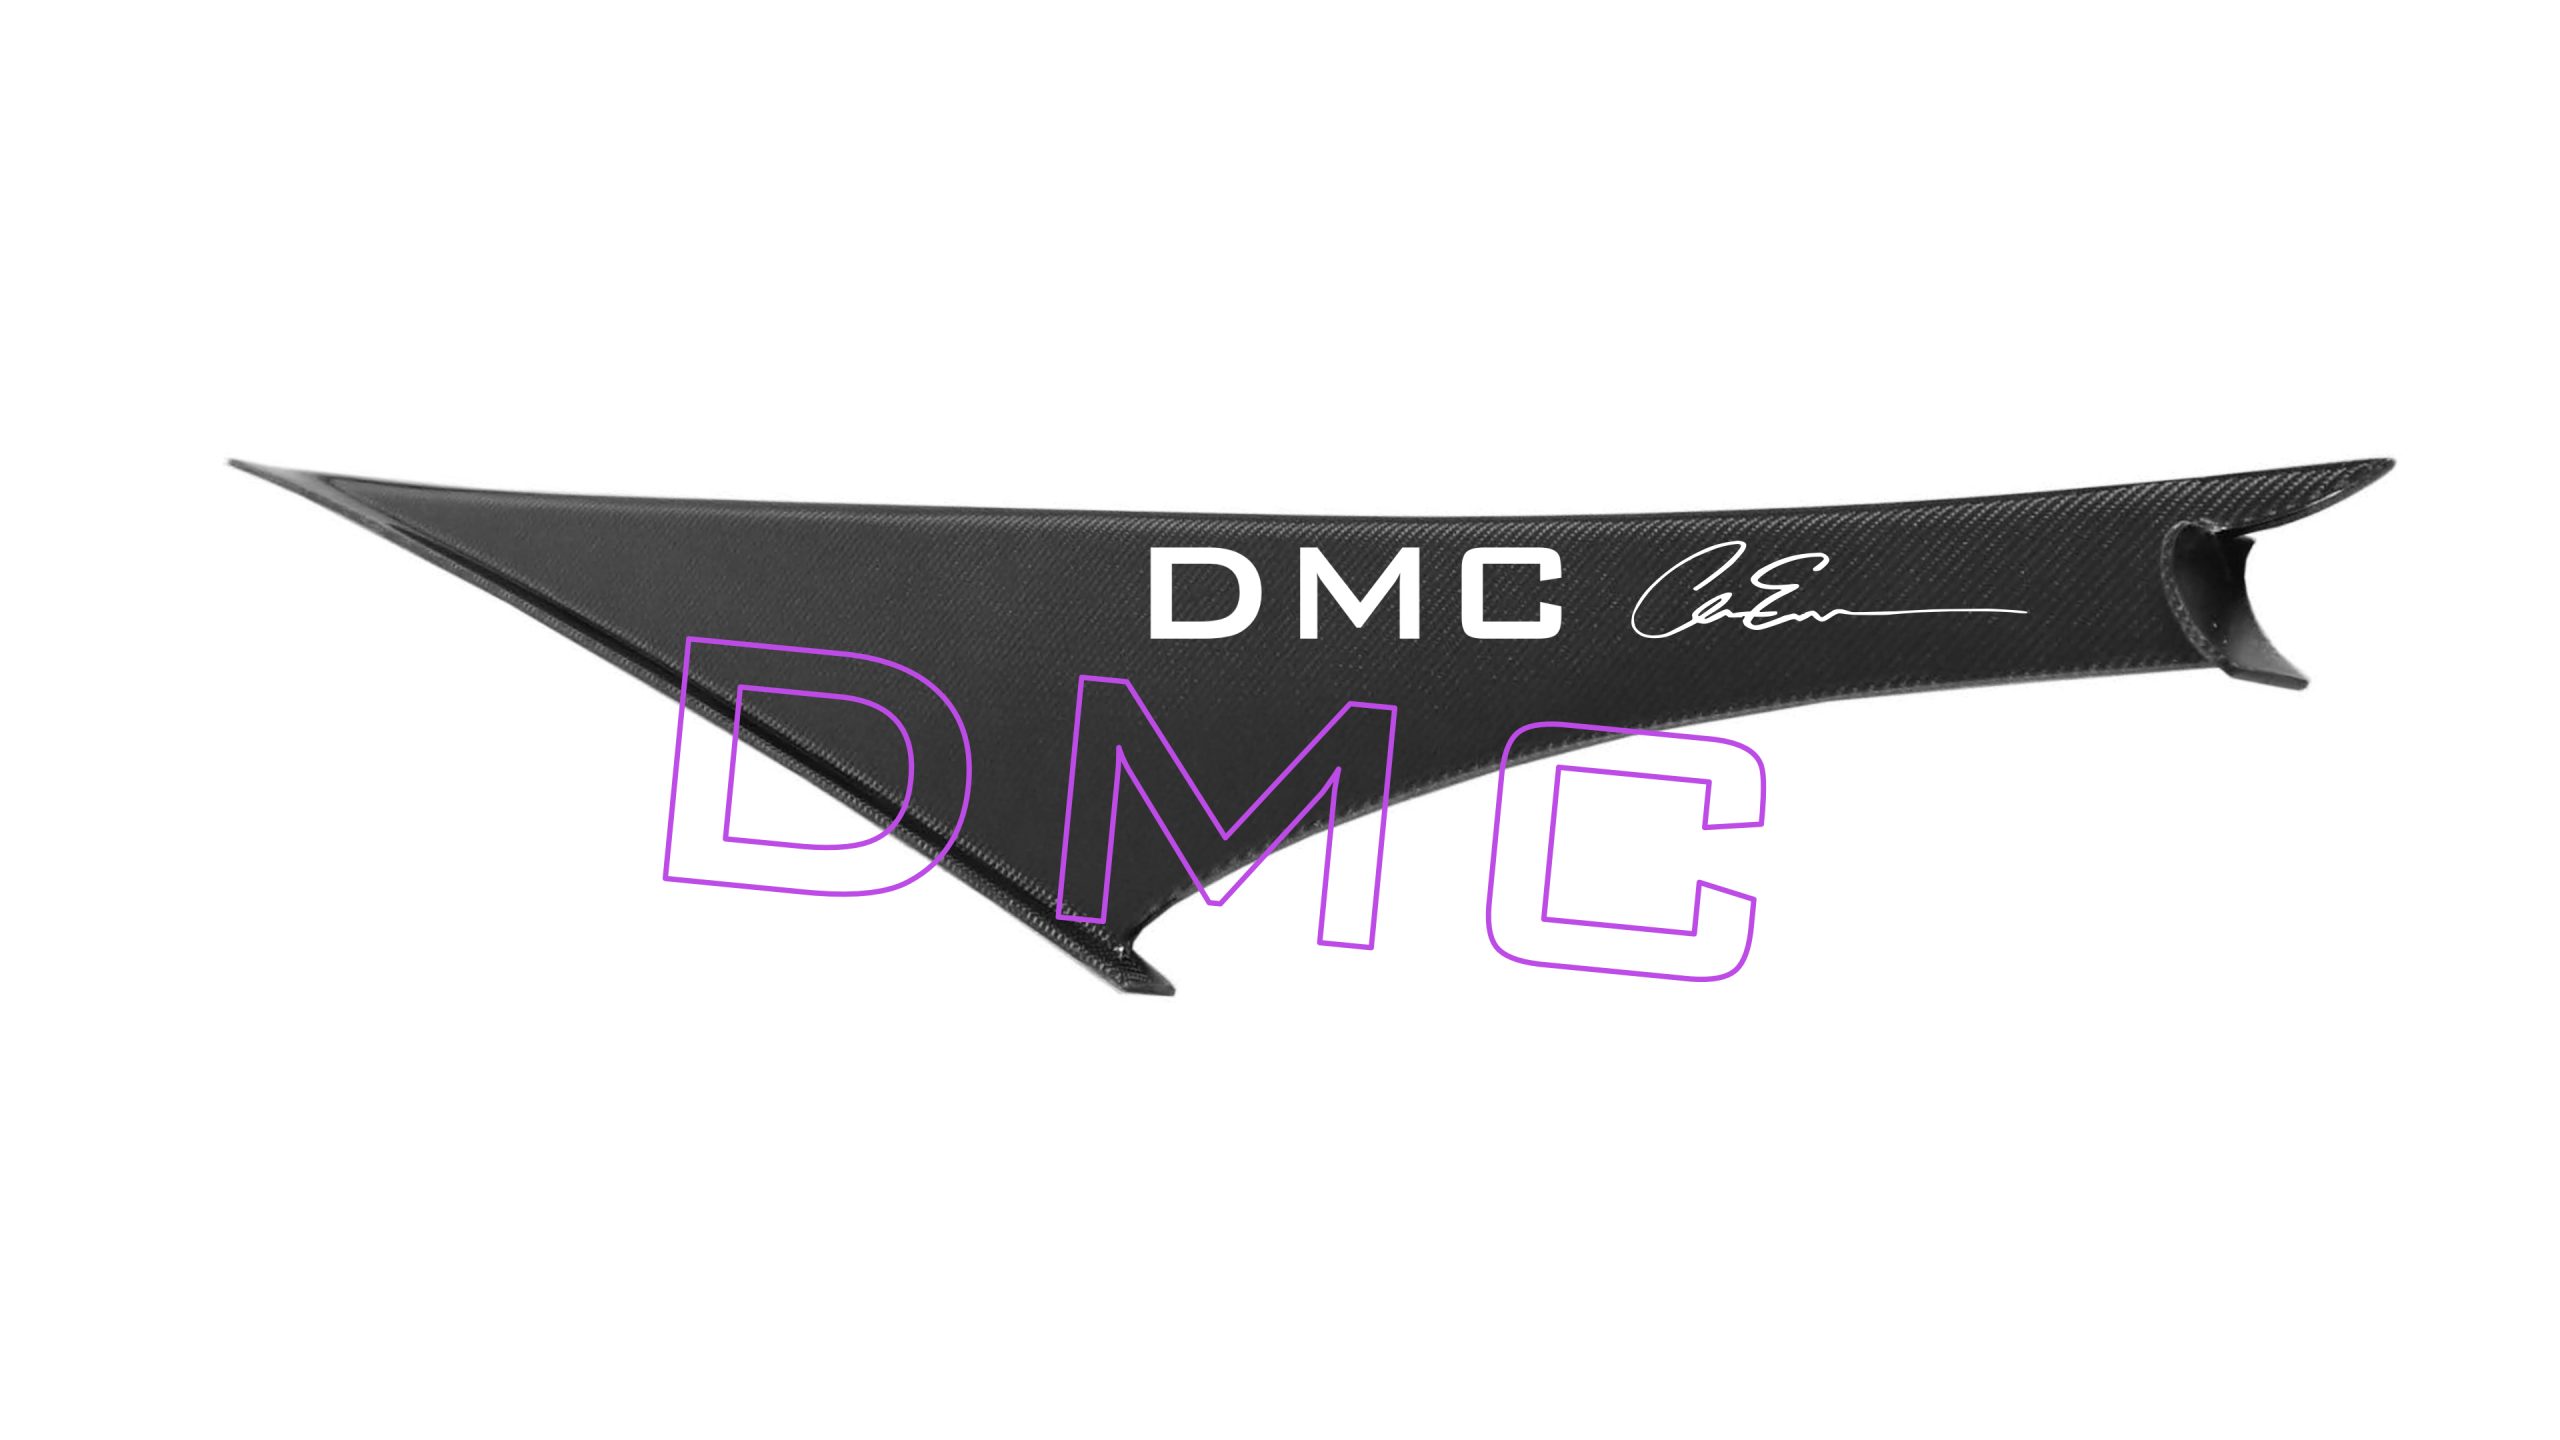 https://dmc.ag/wp-content/uploads/2021/11/DMC_Senna3_4k_Logo-scaled.jpg